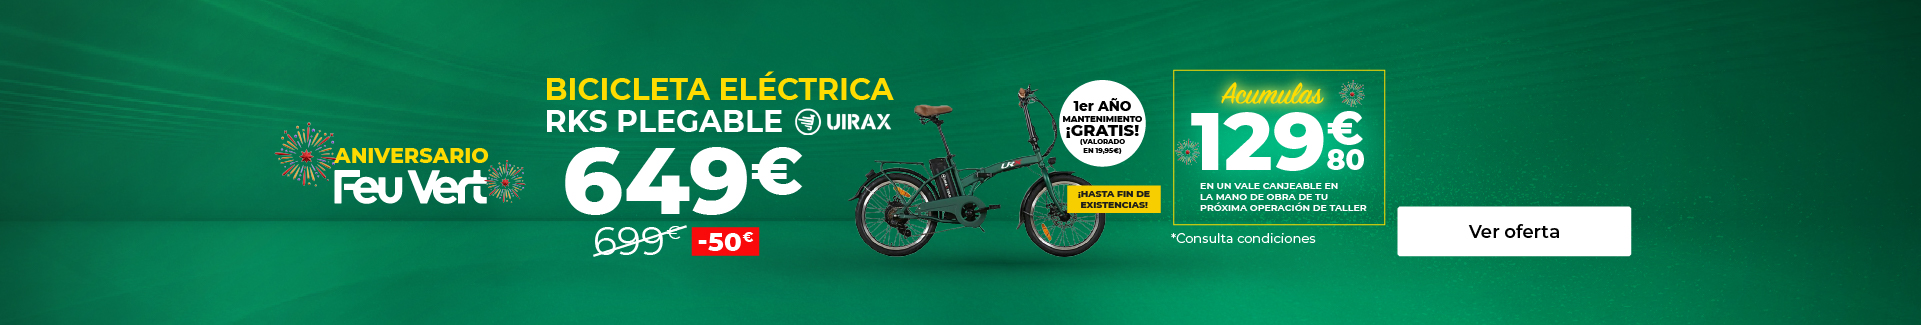 Bici eléctrica plegable RKS Shimano Uirax fold urbana V2 Verde